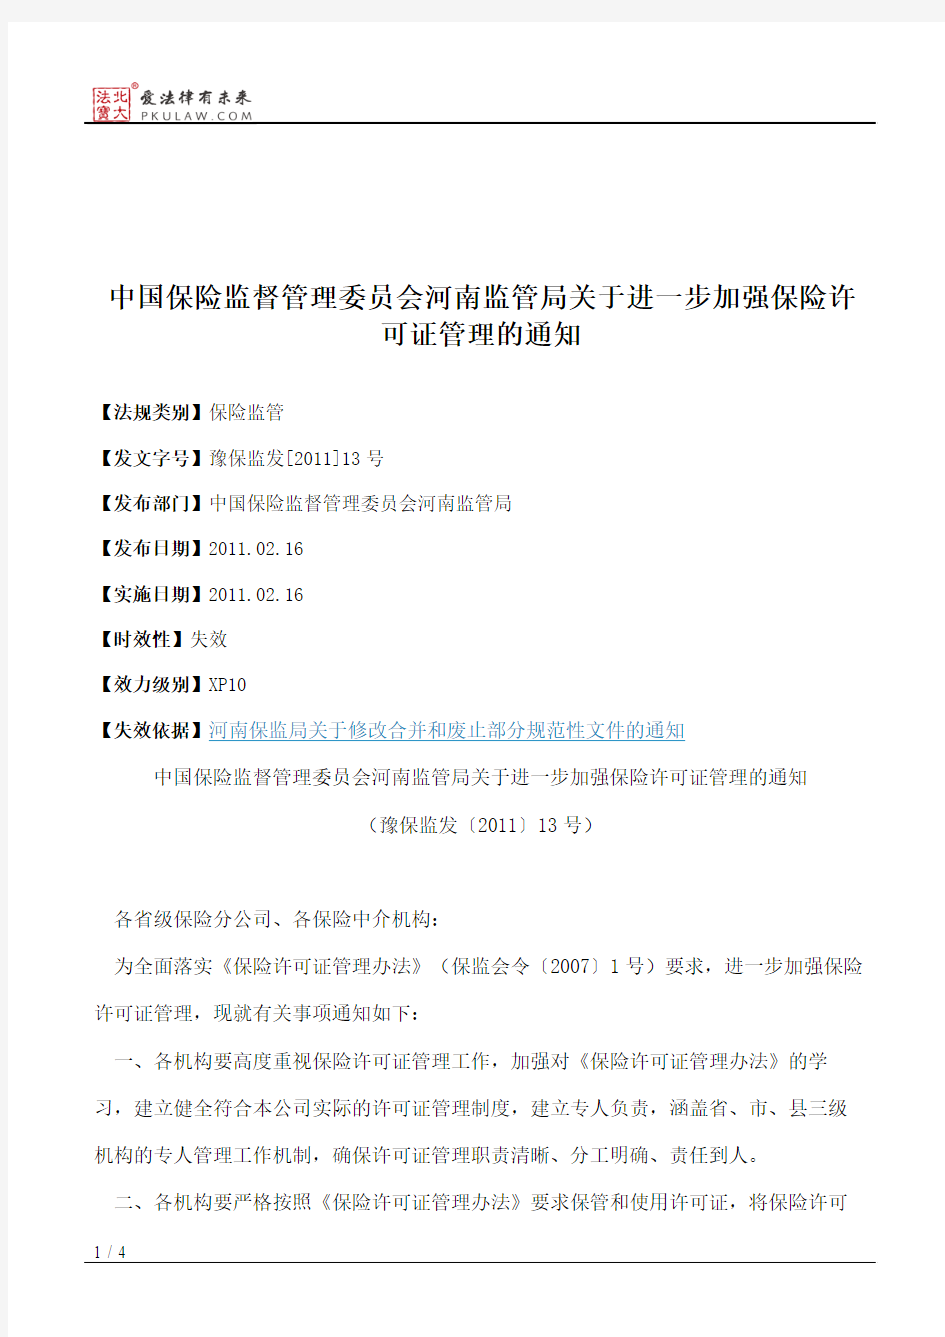 中国保险监督管理委员会河南监管局关于进一步加强保险许可证管理的通知